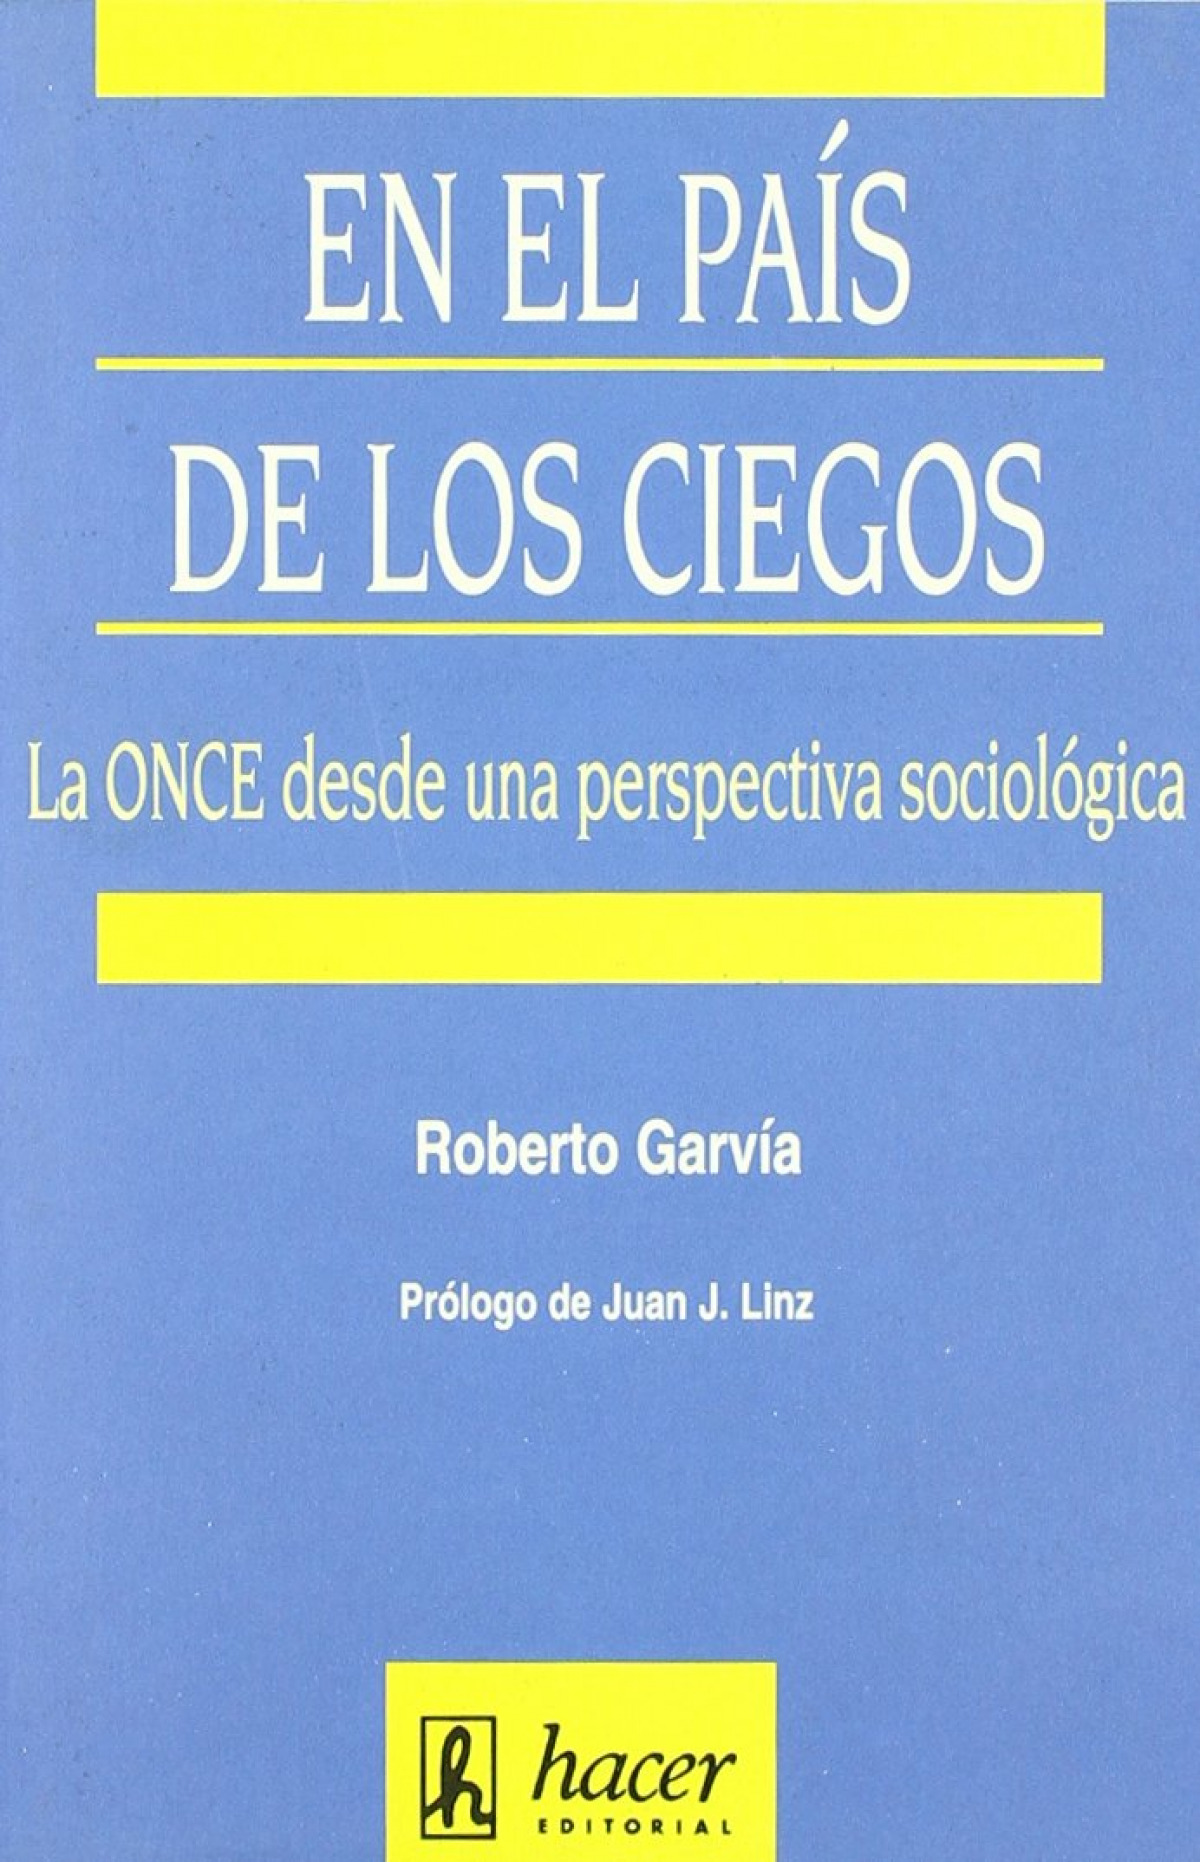 En el país de los ciegos la ONCE desde una perspectiva sociológica - Garvía Soto, Roberto